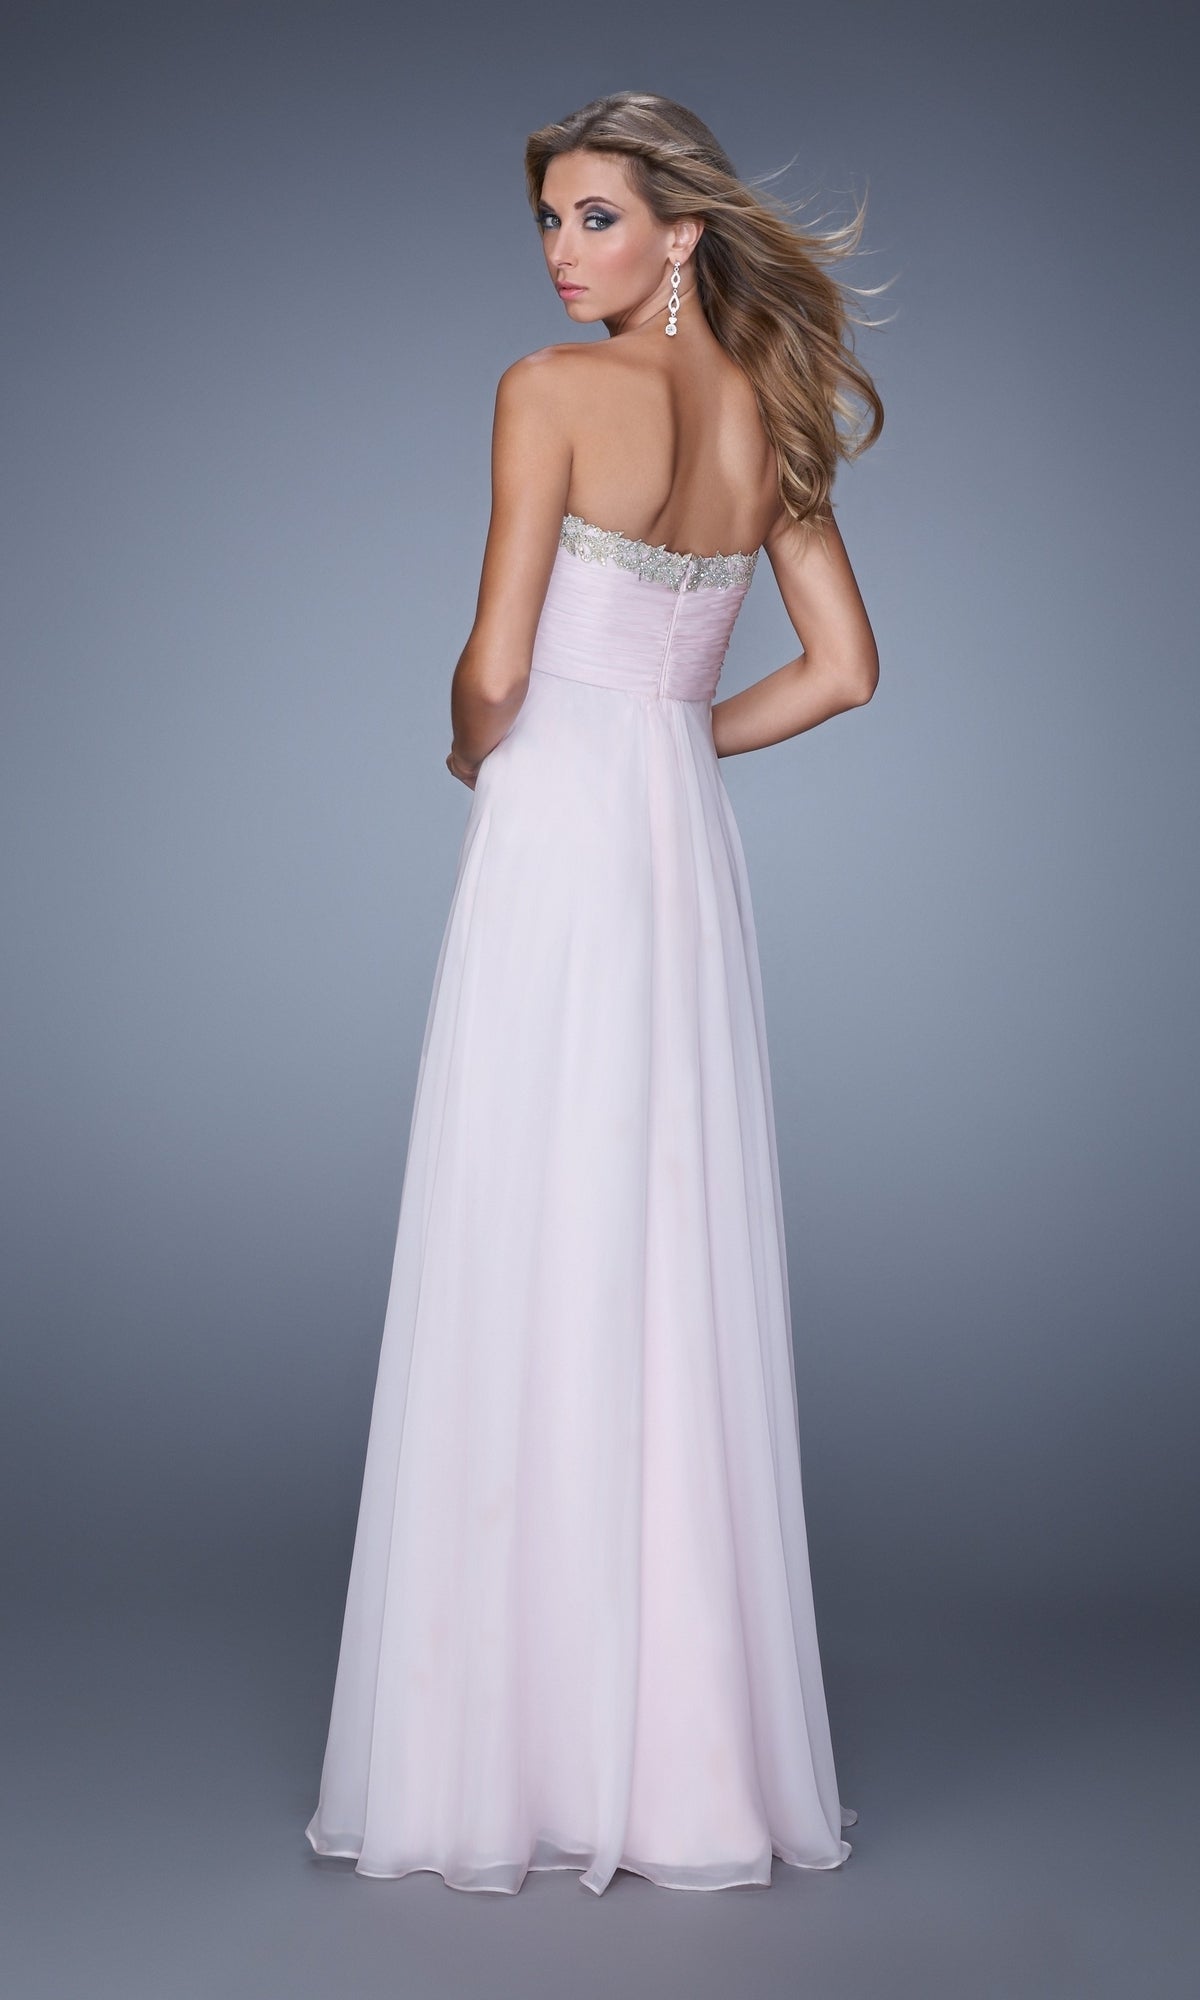 Tiered-Skirt La Femme Chiffon Prom Dress 21374